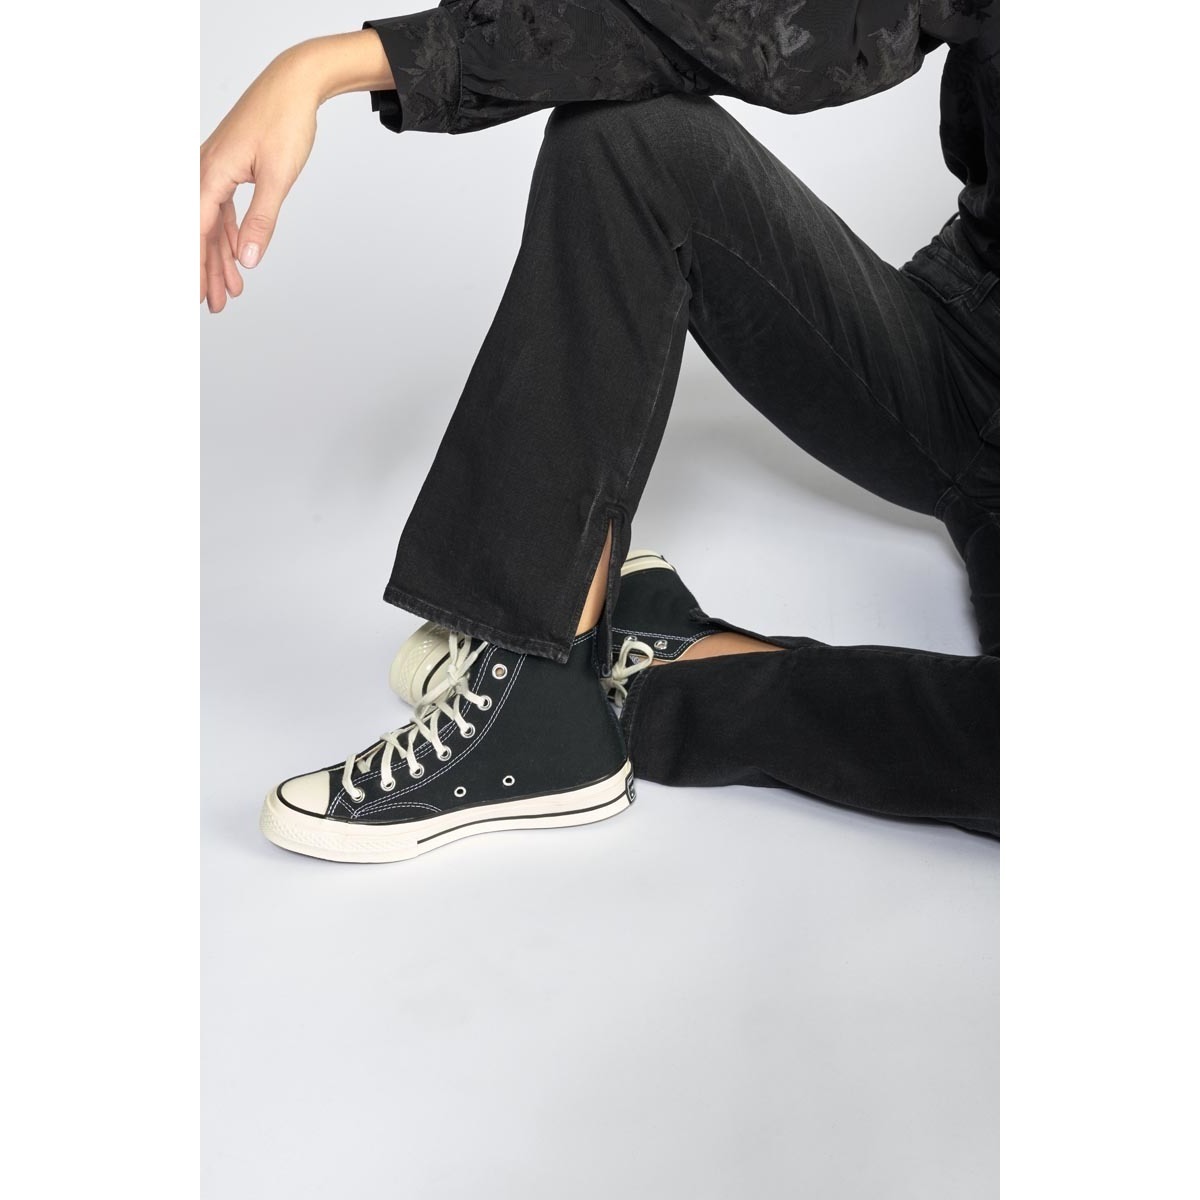 Le Temps des Cerises Noir Lux 400/19 mom taille haute jeans noir yT6qMUHe